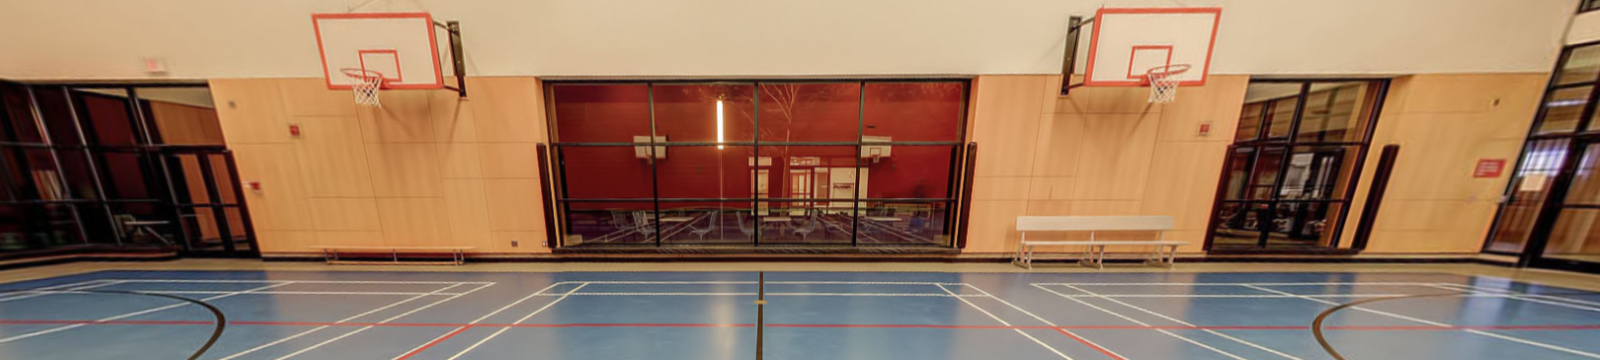 Delpark Homes Centre Gymnasium